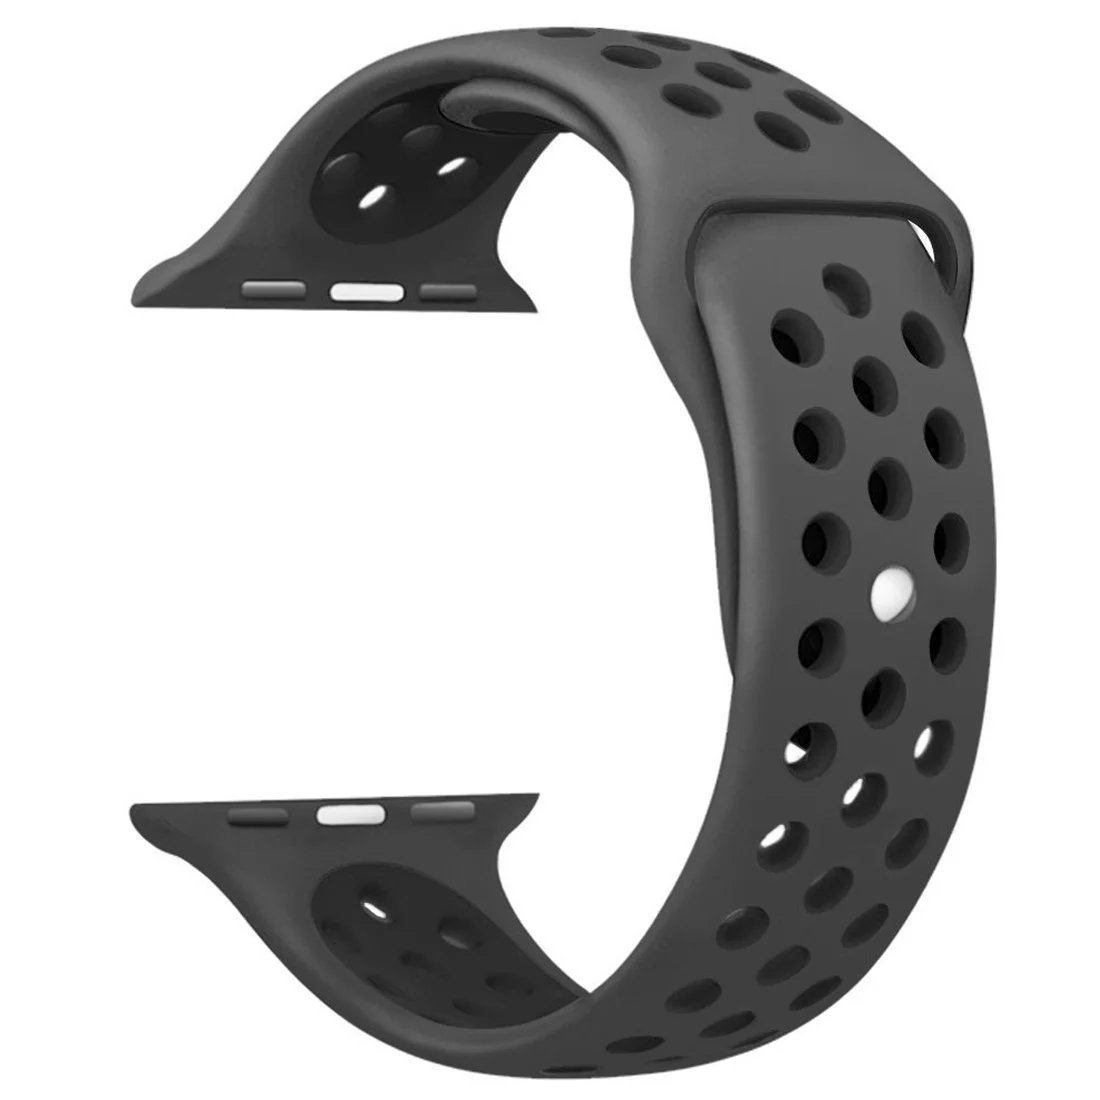 Řemínek iMore SPORT pro Apple Watch Series 1/2/3 (38mm) - Antracitový/Černý